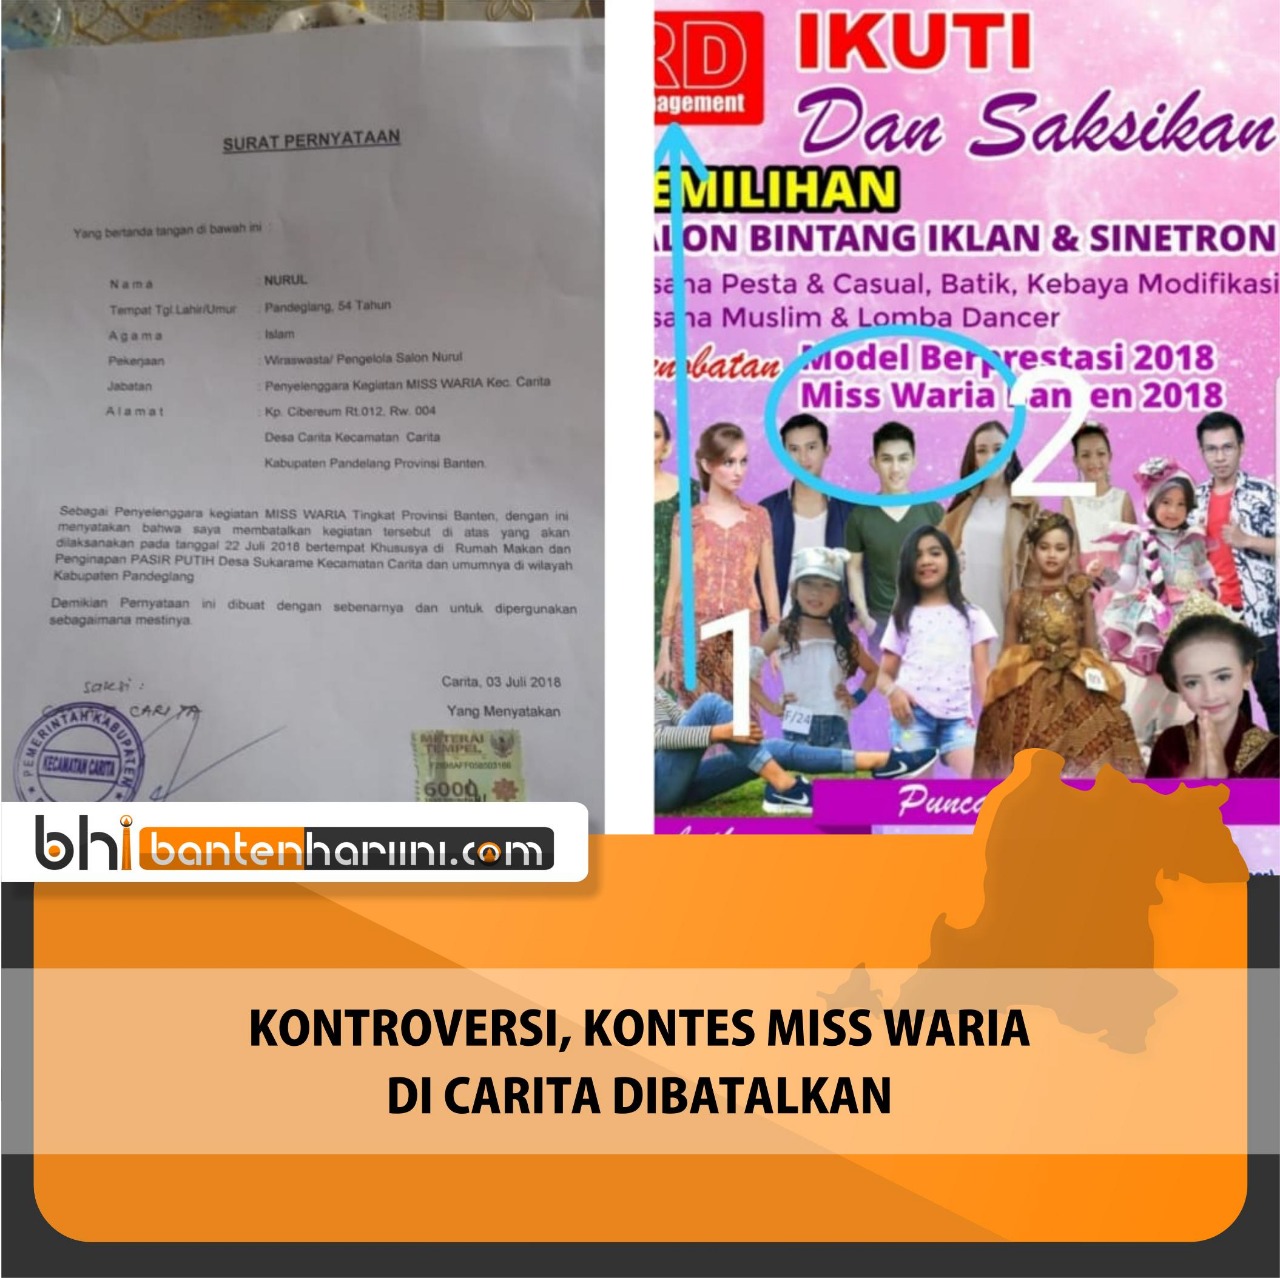 Pamflet Kontes Miss Waria Gegerkan Warganet, Kadispar Pandeglang Batalkan Acara_Foto Bantenhariini_Aep.BHI